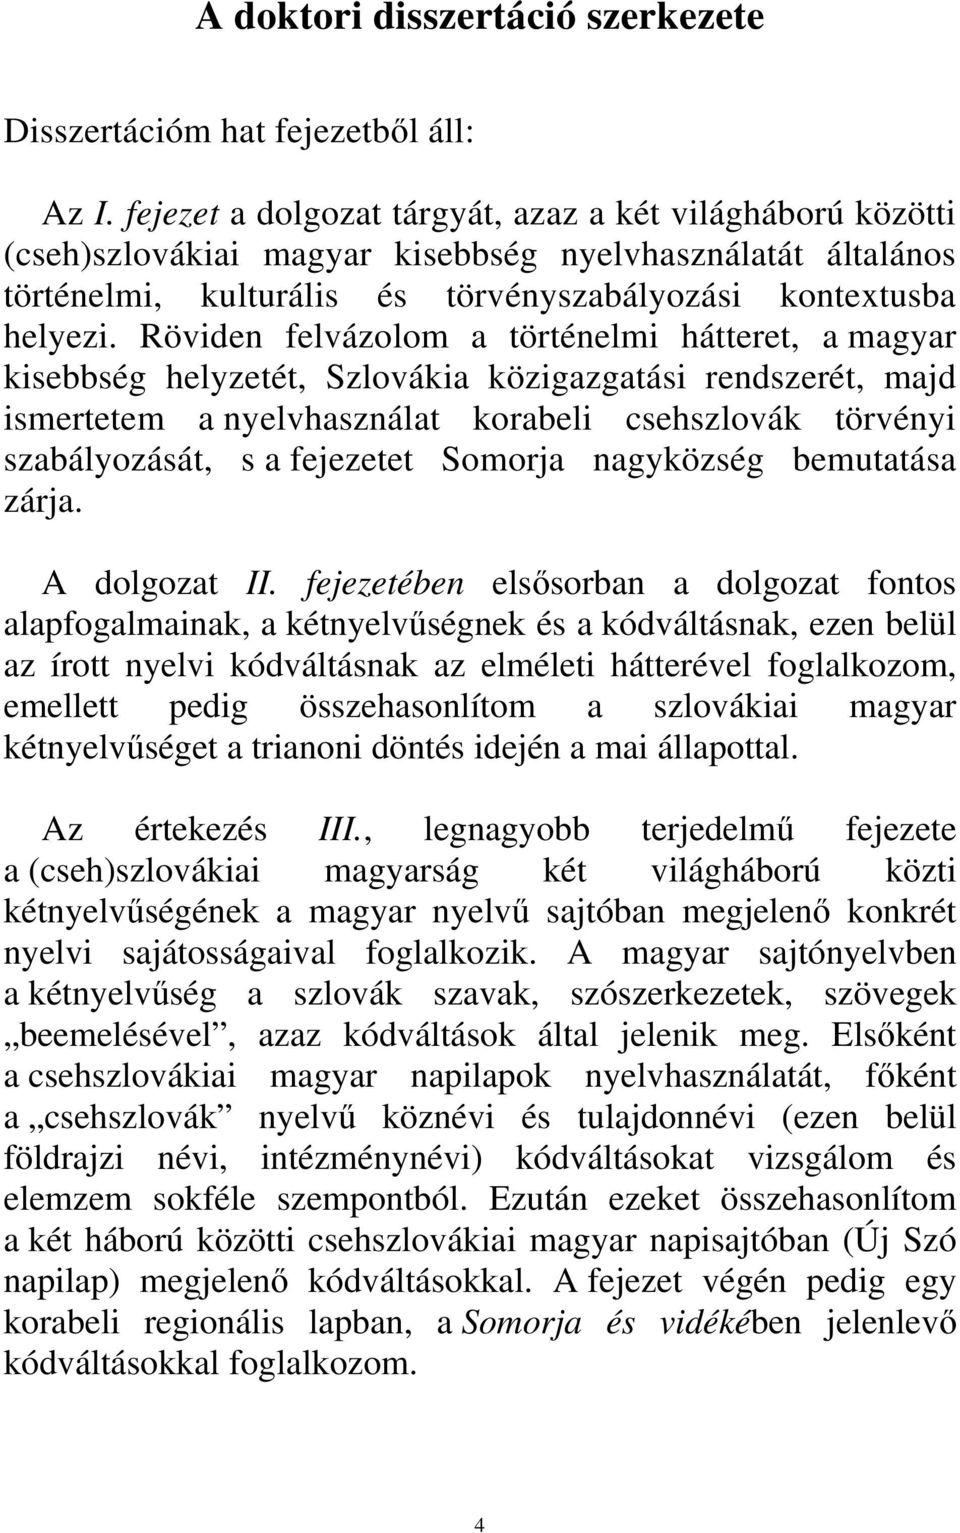 Röviden felvázolom a történelmi hátteret, a magyar kisebbség helyzetét, Szlovákia közigazgatási rendszerét, majd ismertetem a nyelvhasználat korabeli csehszlovák törvényi szabályozását, s a fejezetet